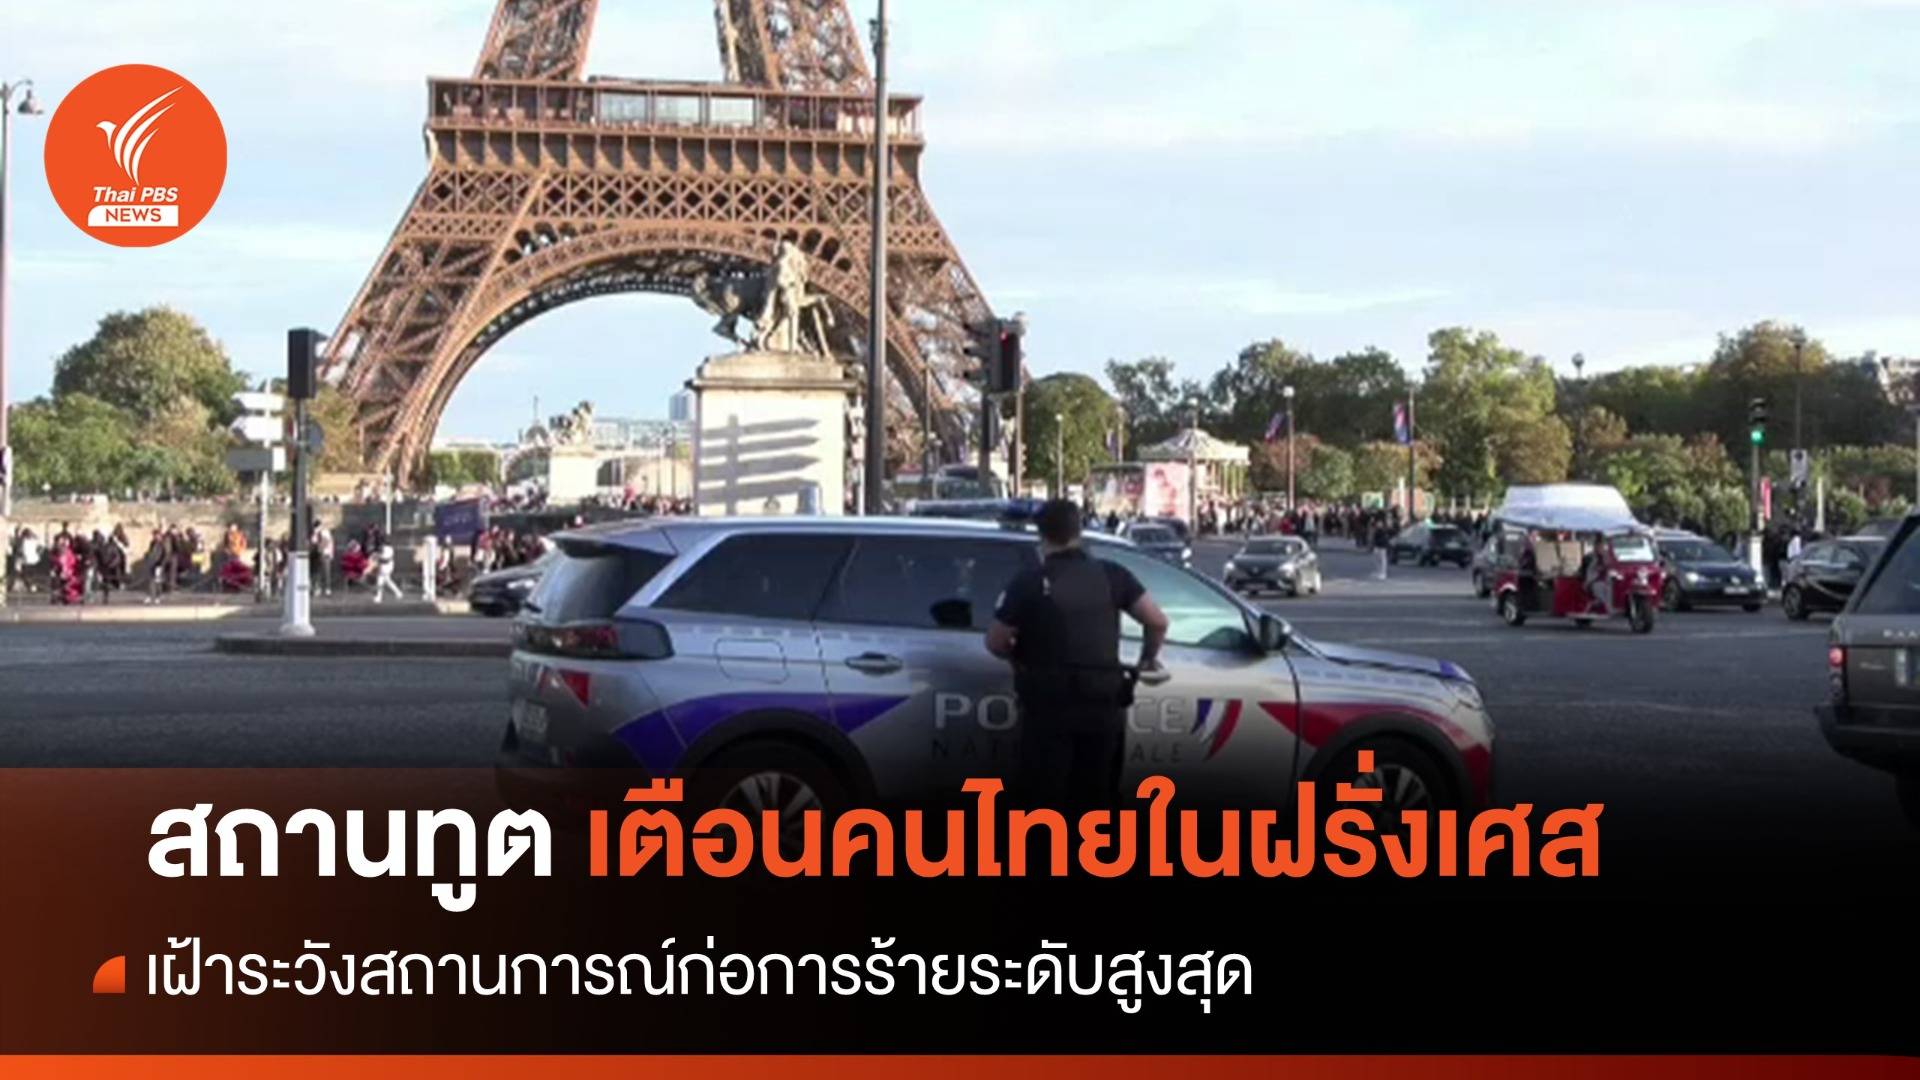 สถานทูตเตือนคนไทยในฝรั่งเศส เฝ้าระวังก่อการร้ายระดับสูงสุด